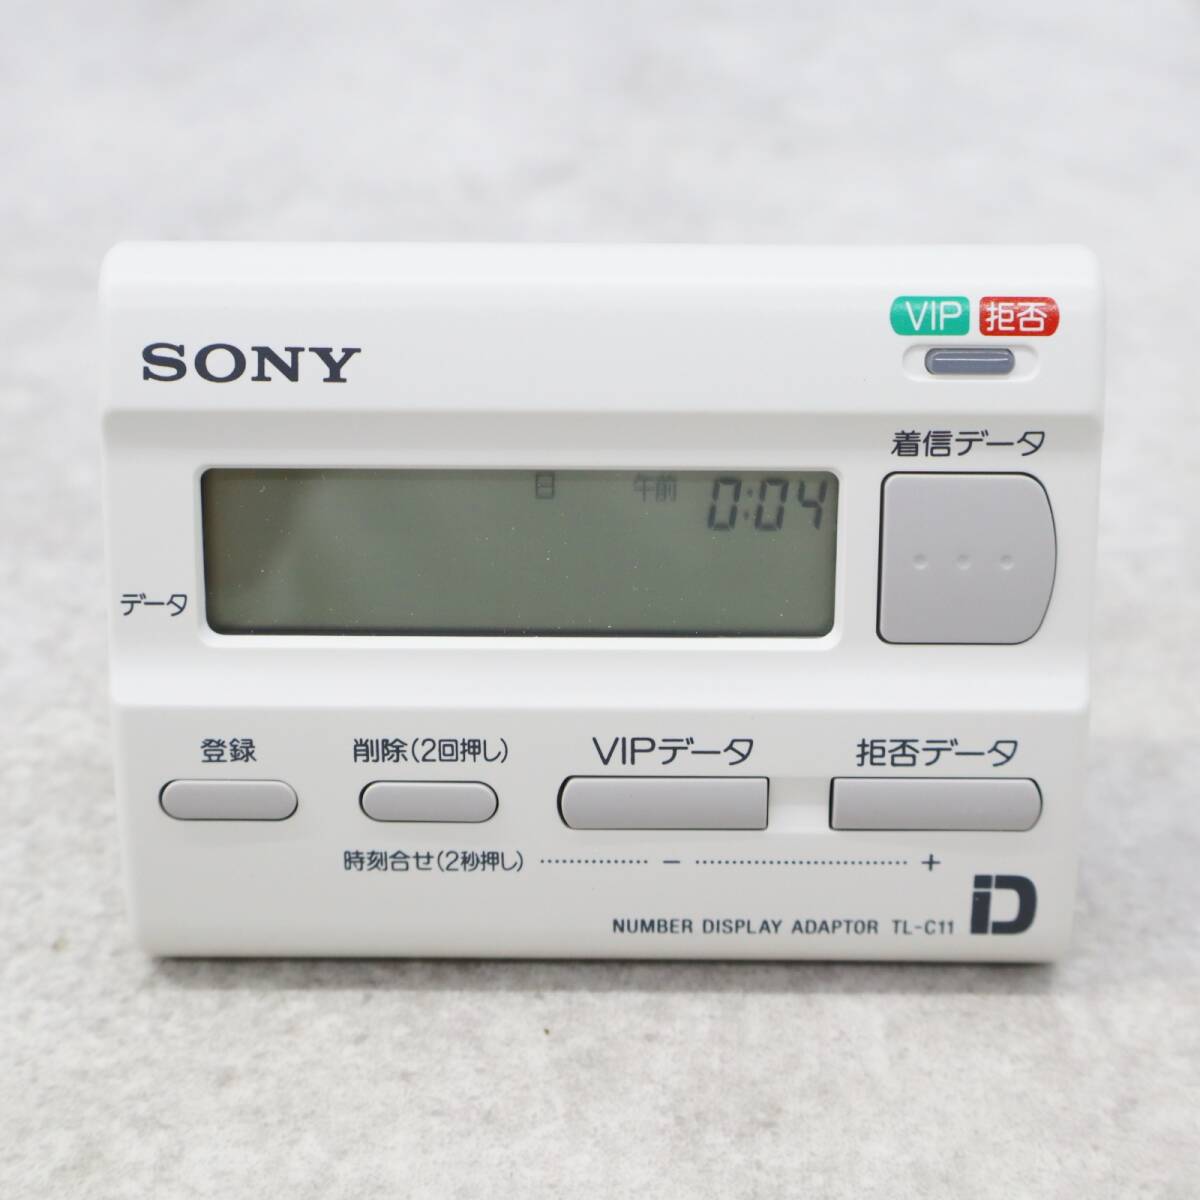 ∨ не использовался товар l номер дисплей адаптор lSONY Sony TL-C11 l #P2982